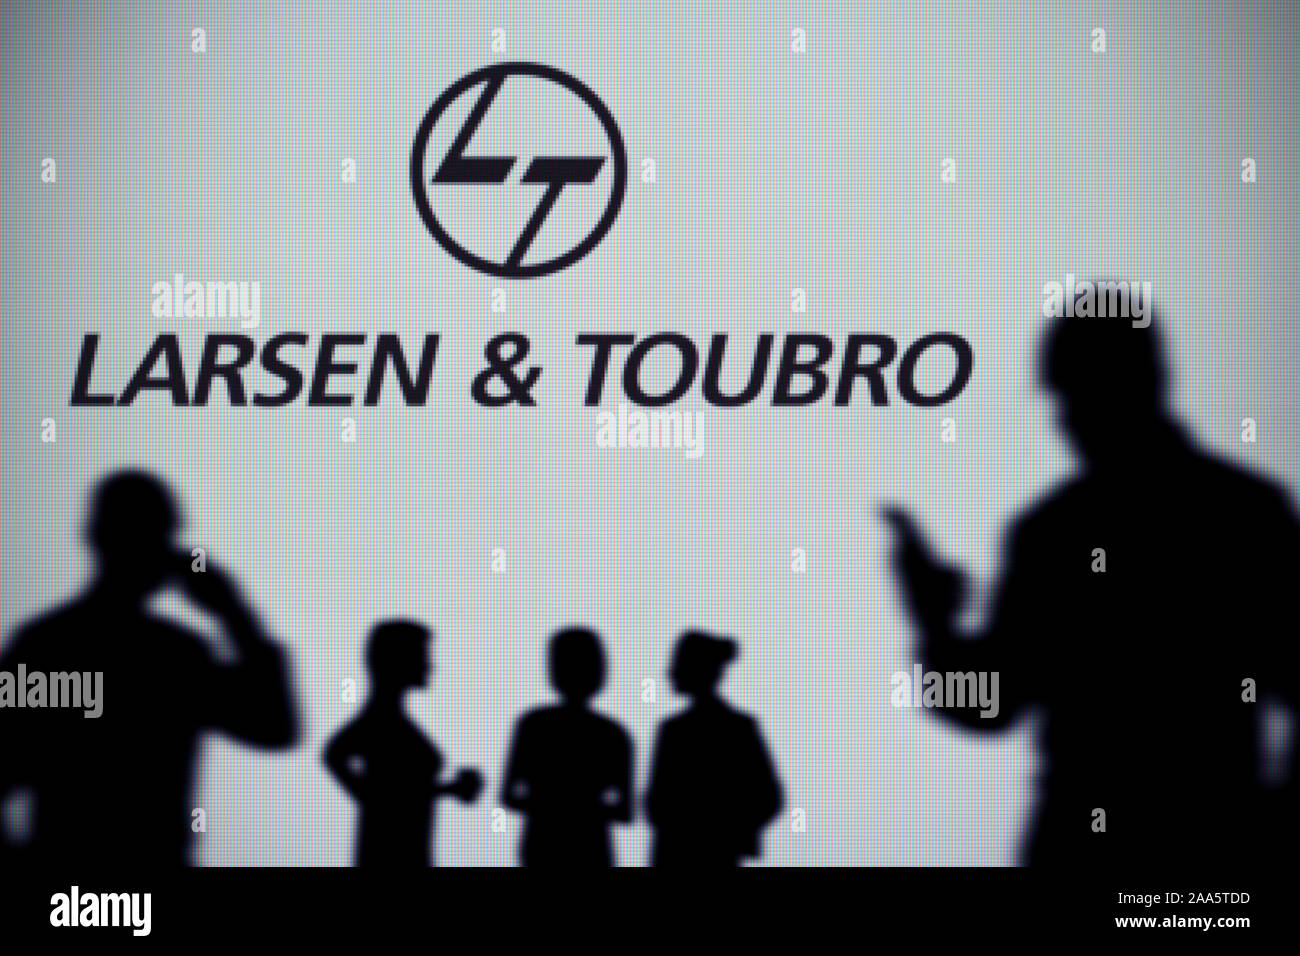 El Larsen and Toubro logo es visto en una pantalla LED en el fondo mientras una silueta persona utiliza un smartphone (uso Editorial solamente) Foto de stock